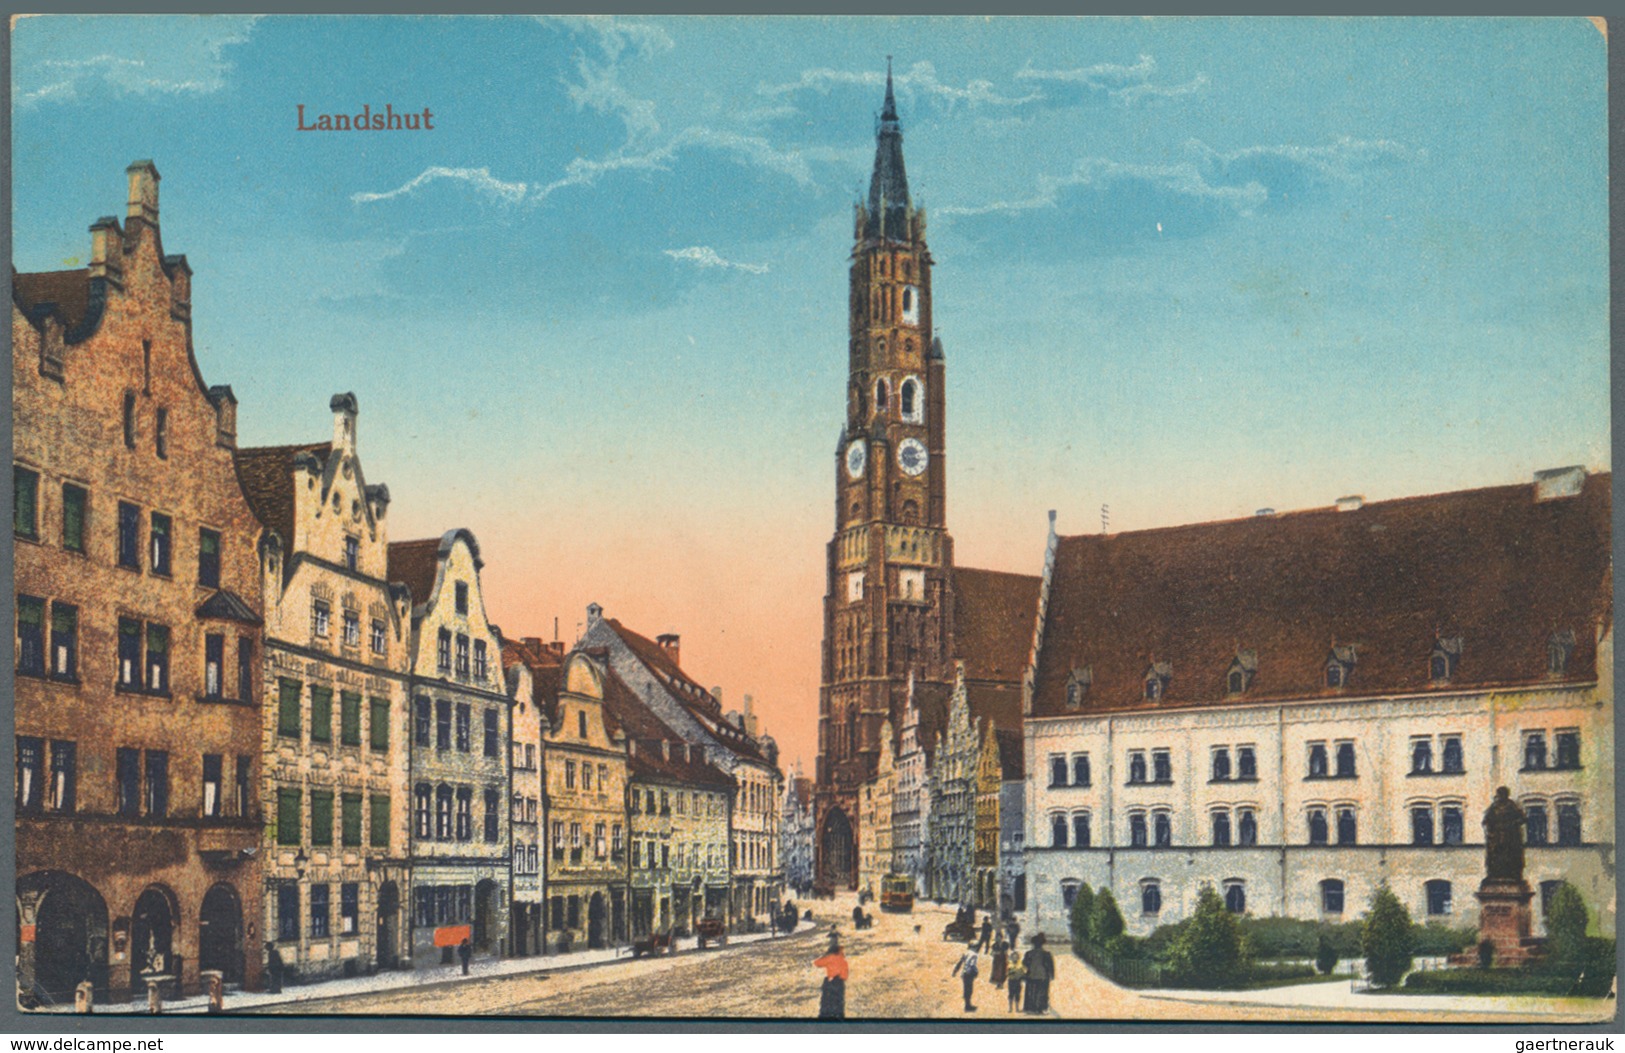 Ansichtskarten: Bayern: LANDSHUT mit Landkreis (alte PLZ 8300-8319), ein vielseitiger Bestand mit üb